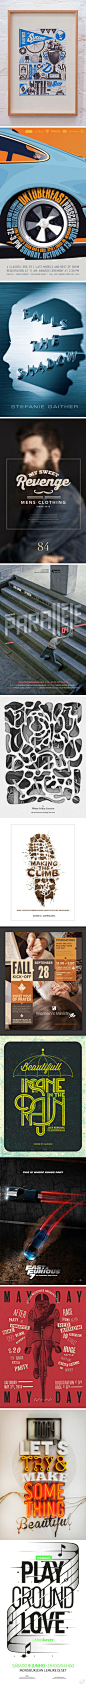 【超赞！一组创意海报设计】 【附：碉堡！不得不看的疯狂字体设计】http://t.cn/8kaSRlm